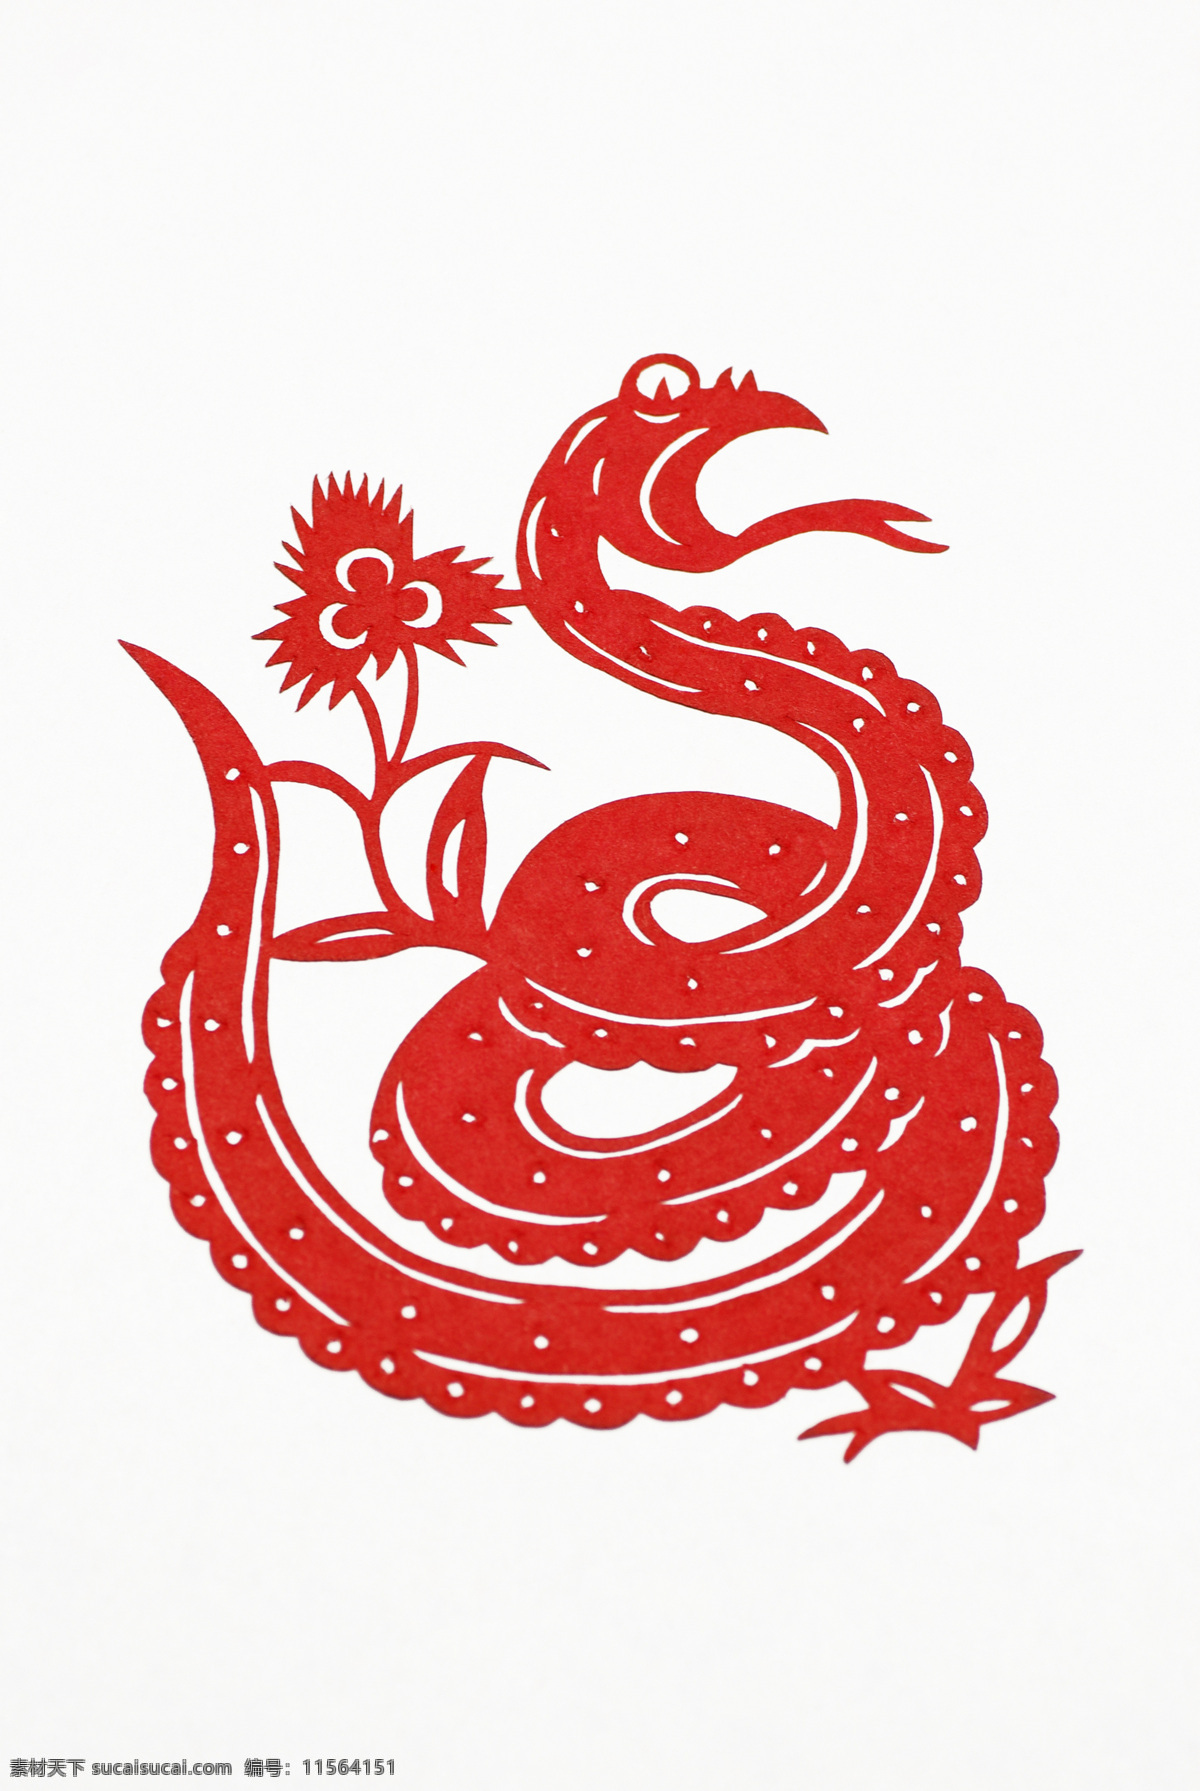 2013 年 新年 剪纸 蛇 蛇剪纸 春节素材 蛇年素材 卡通蛇 民间剪纸艺术 节日庆典 生活百科